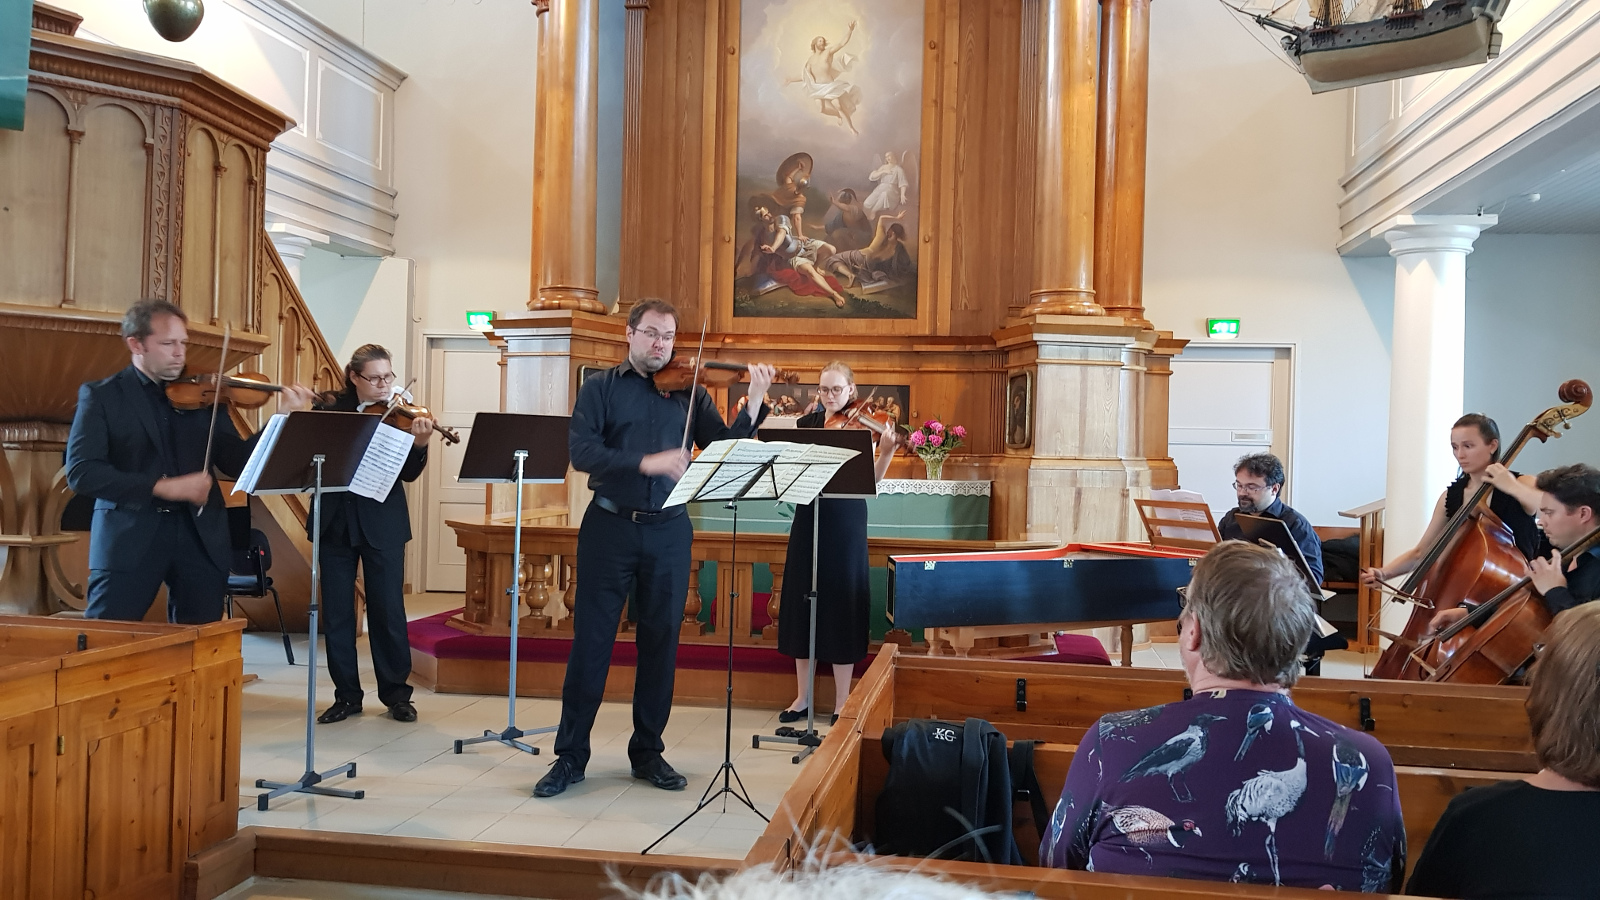 Kuvassa ovat Kaakon Kamarimusiikin ensemblen soittajat Haminan kirkon kuorissa koko kuvan leveydeltä. Taustalla näkyy alttaritaulua ja etualalla kirkon penkkejä sekä oikealla miehen selkämystä. 